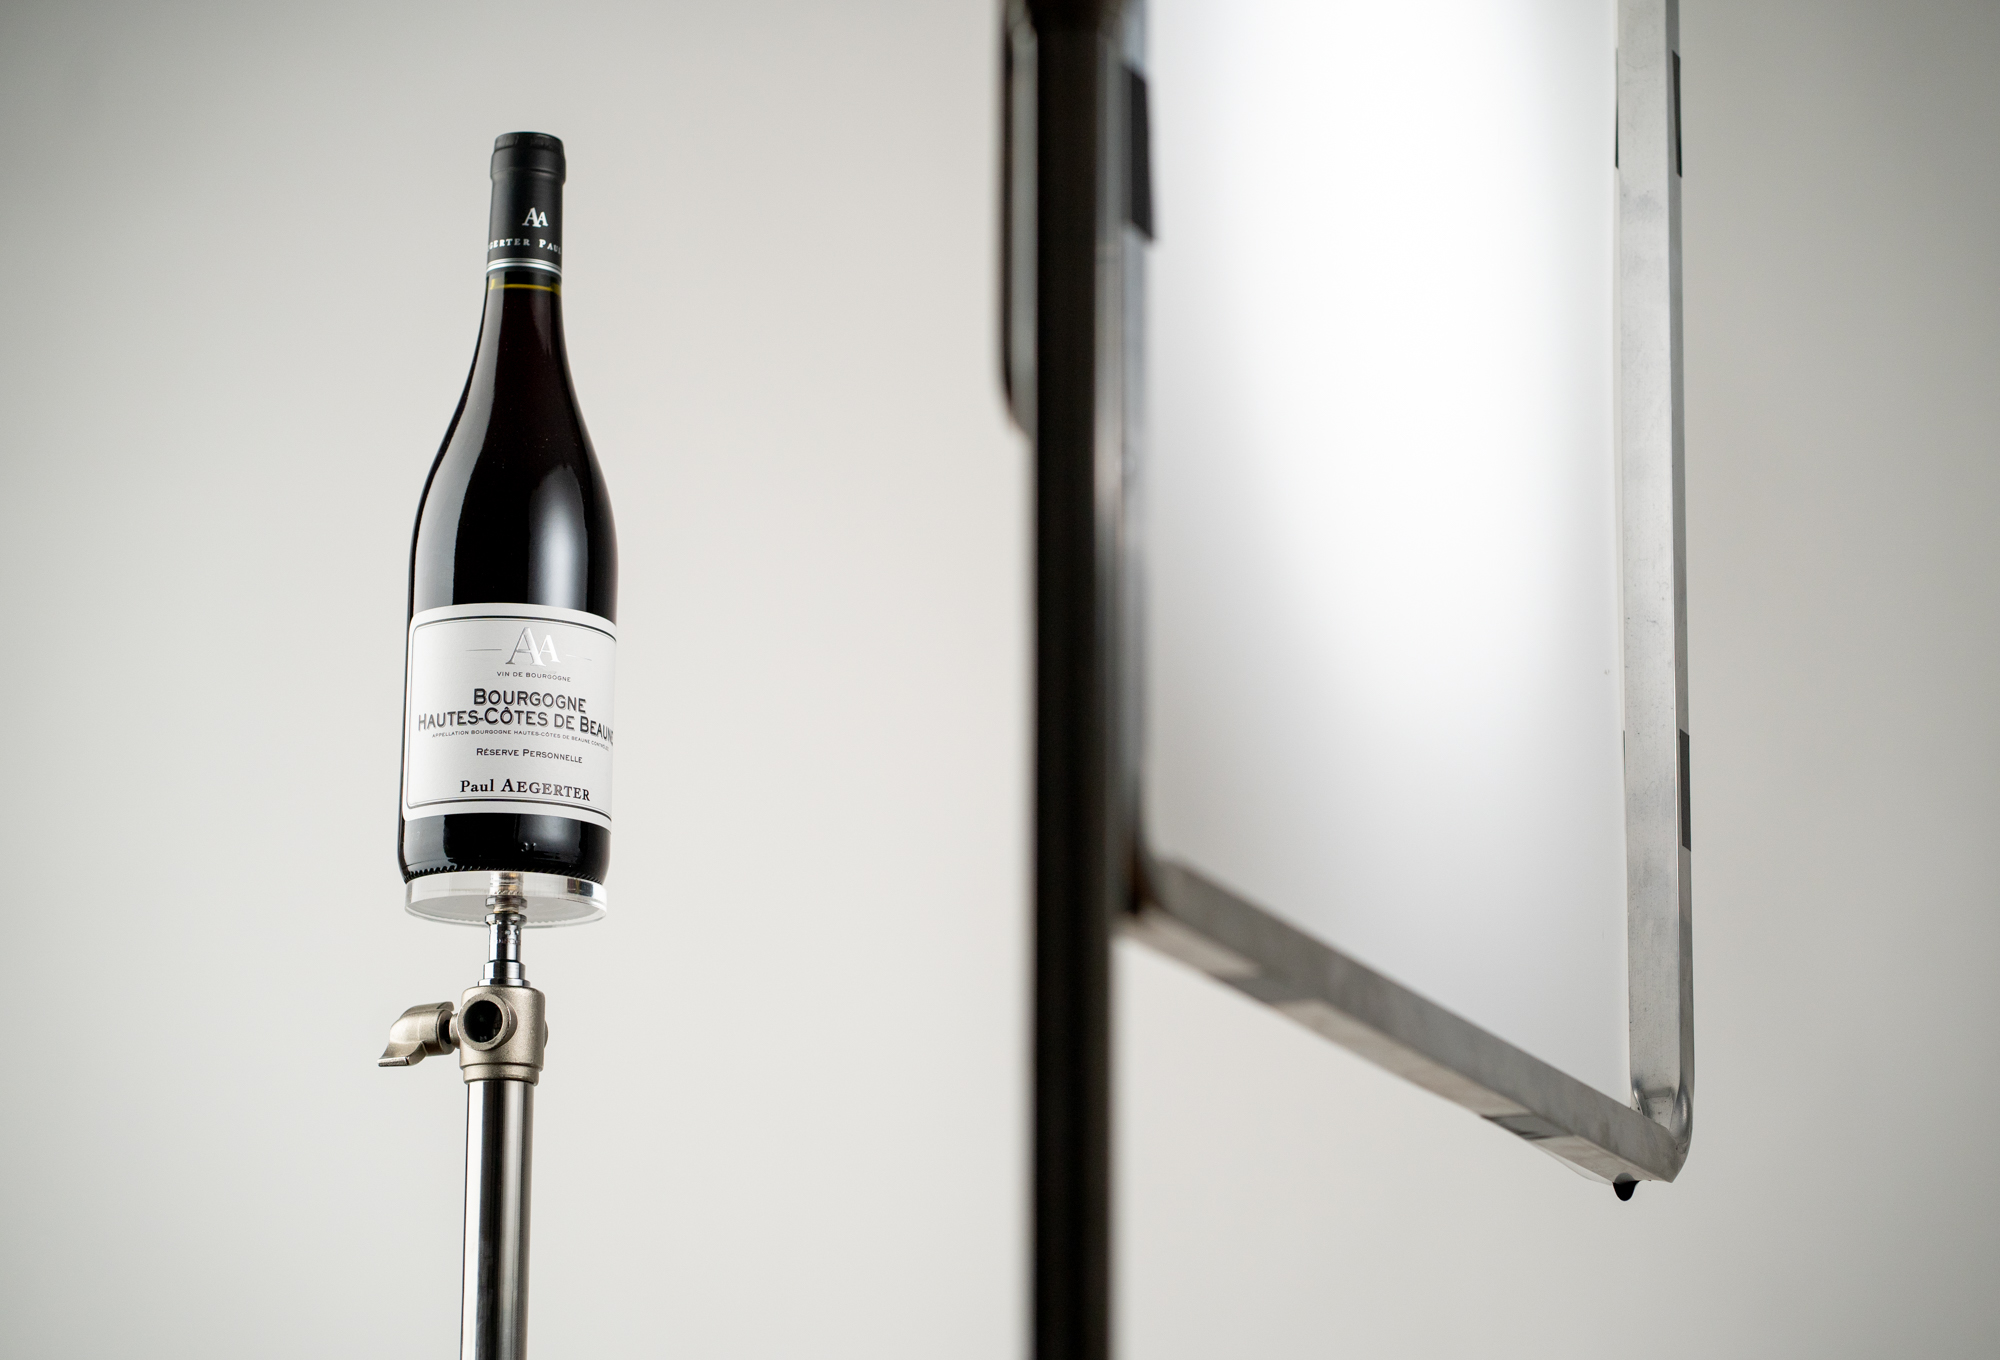 Photographie backstage studio mise au point bouteille de vin